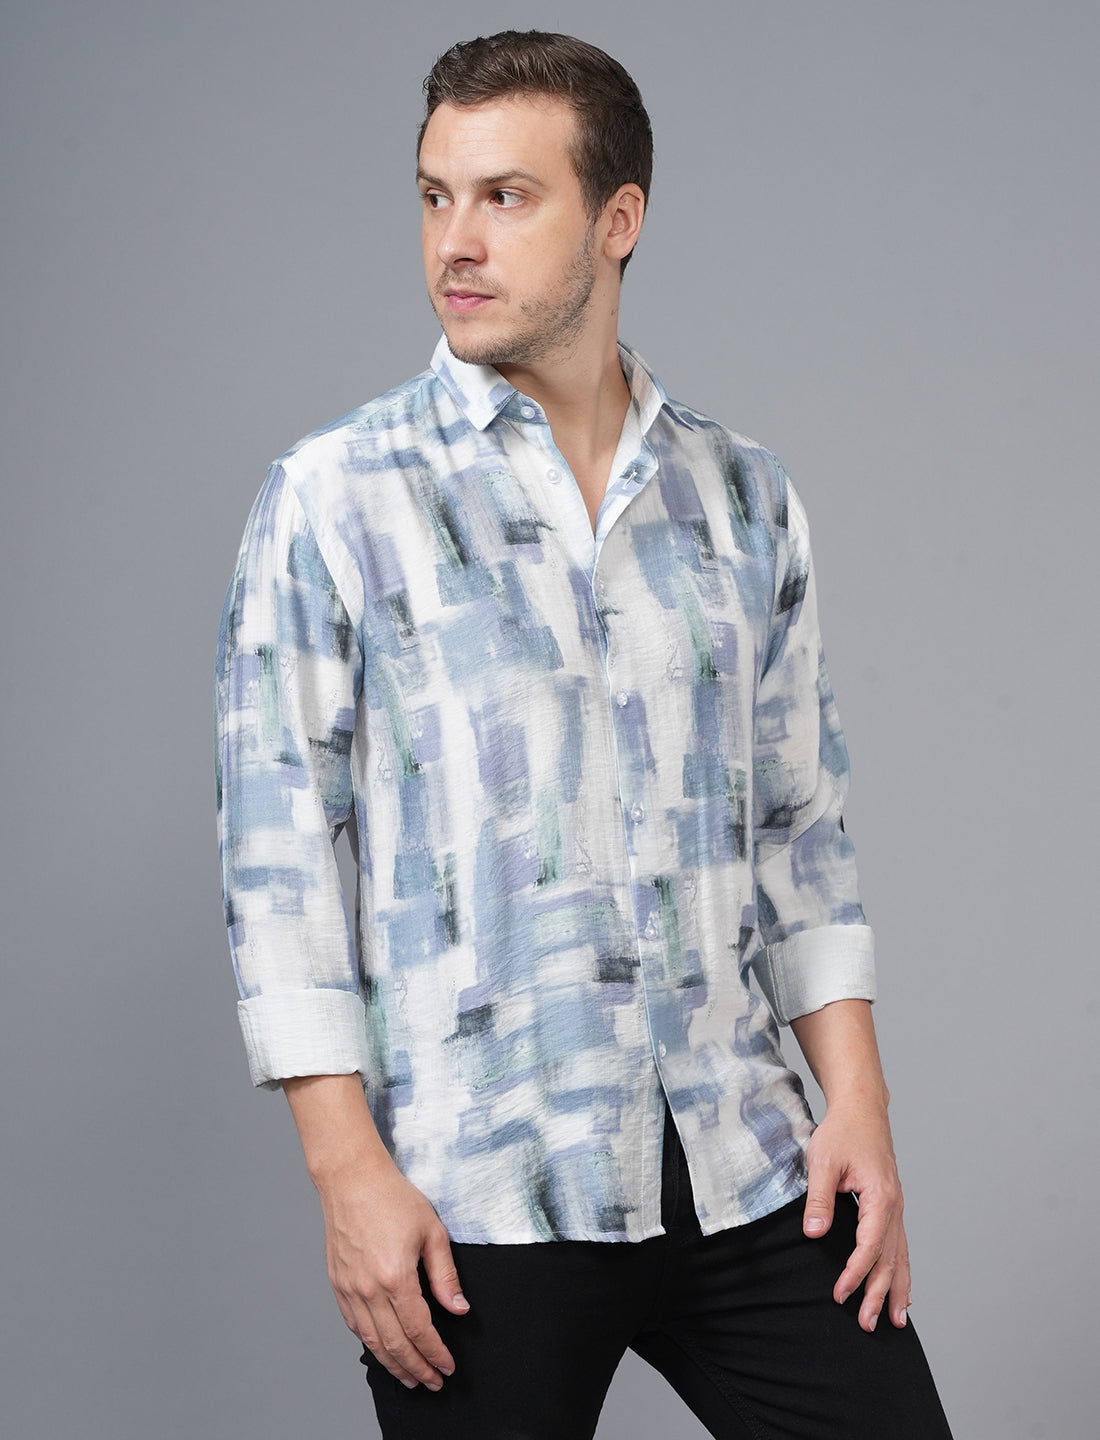 Buy Blue White Designed Full Sleeve Printed Shirt